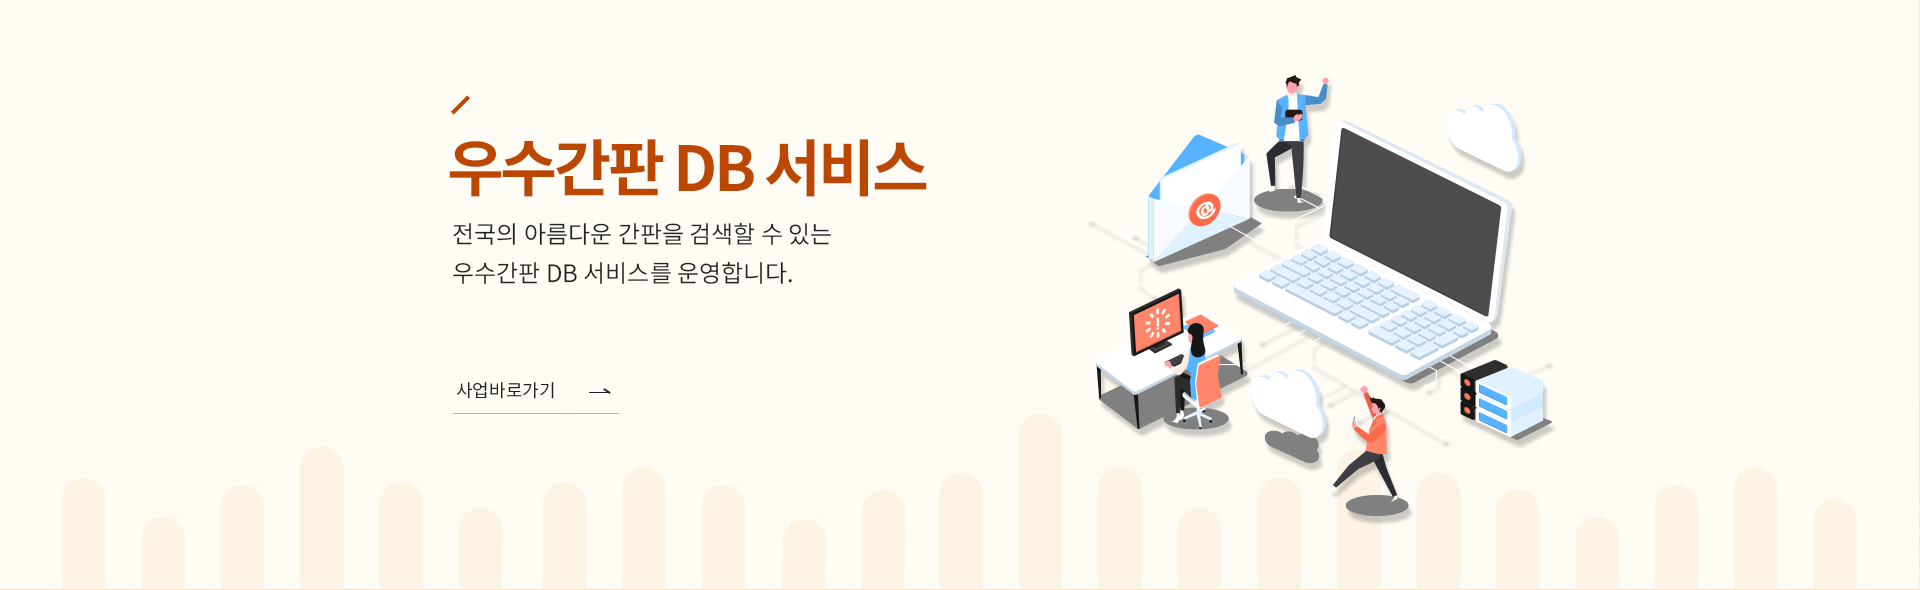 우수간판 DB 서비스   전국의 아름다운 간판을 검색할 수 있는 우수간판 Db 서비스를 운영합니다. 사업바로가기 →